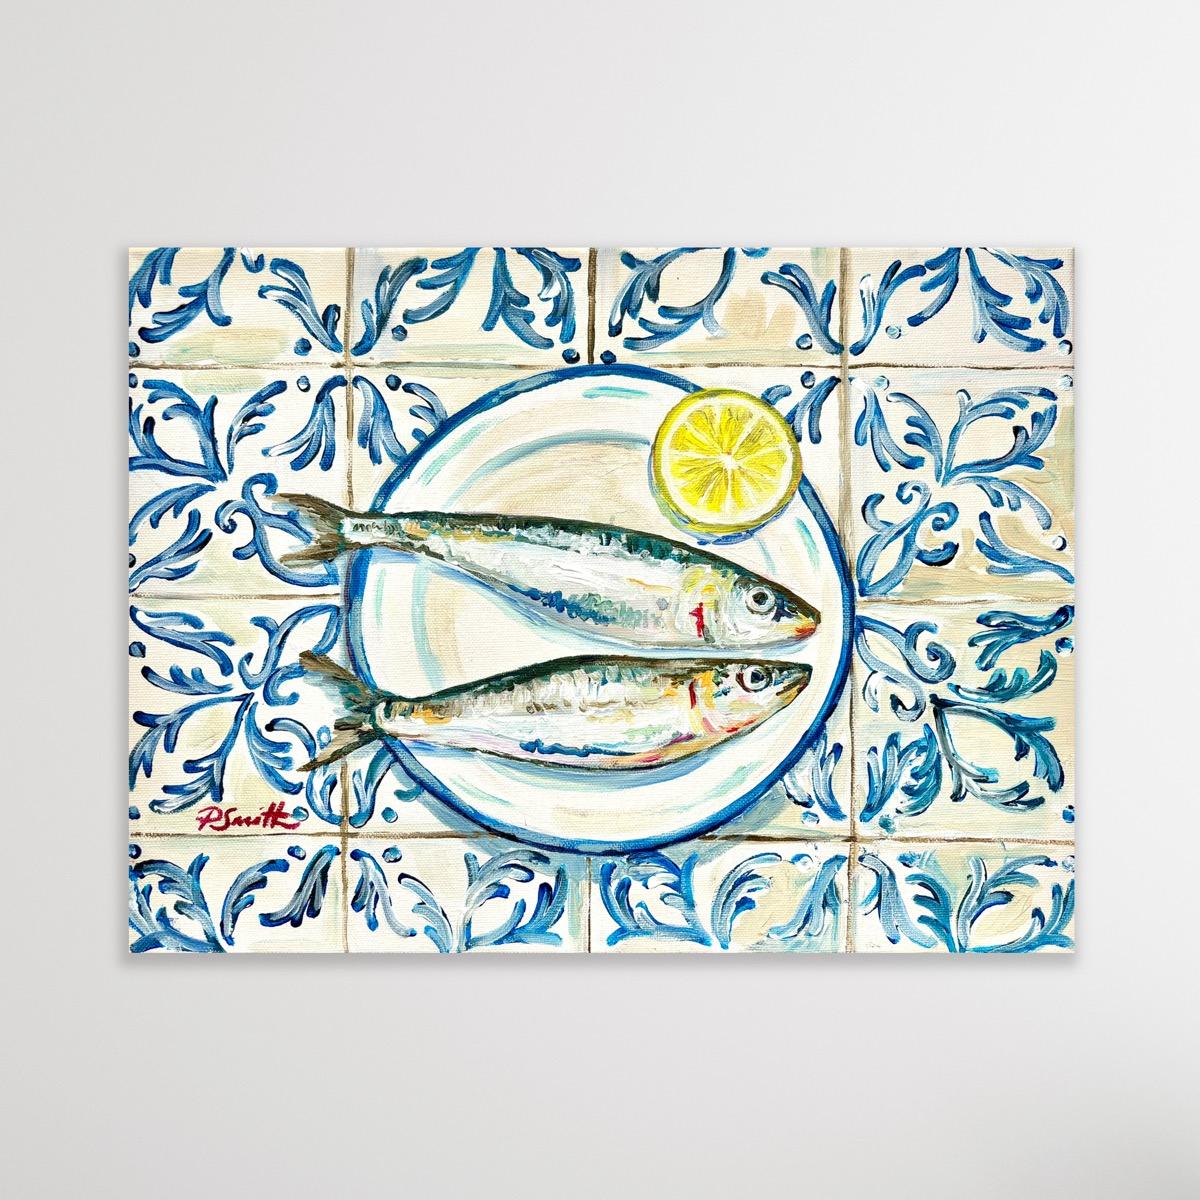 Cette nature morte contemporaine, fraîche et vibrante, représente deux sardines colorées et une tranche de citron sur fond de carreaux espagnols bleus et blancs. La composition est une célébration joyeuse de la simplicité de la cuisine hispanique et